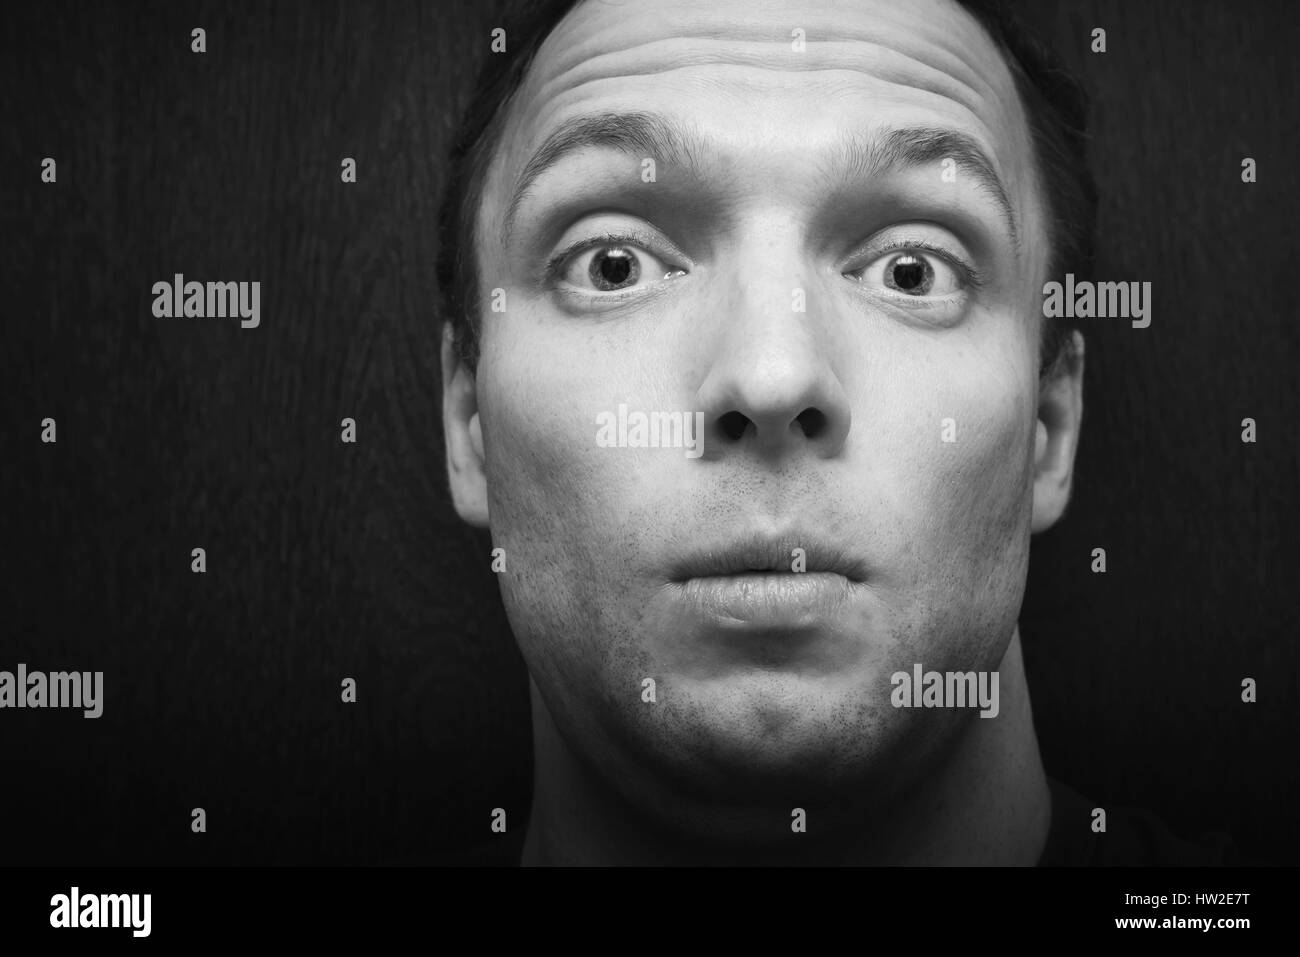 Young überrascht kaukasischen Mann. Close-up Gesicht Studioportrait über dunklen Holzwänden Hintergrund, Tiefenschärfe, schwarz / weiß Foto Stockfoto